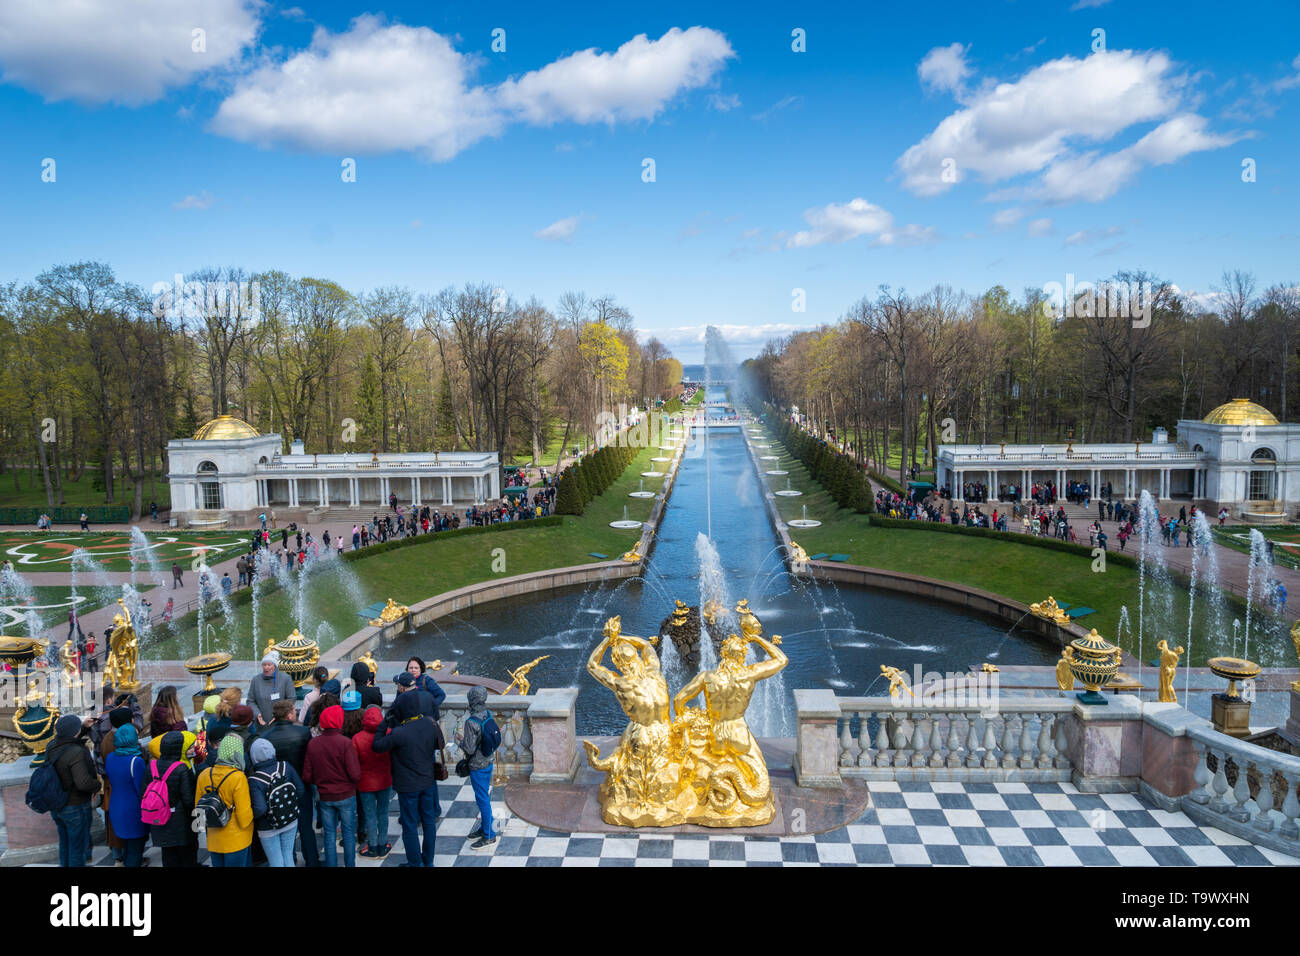 San Petersburgo, Rusia - Mayo 2019: Fuentes y Peterhof Palace View y los turistas que visitan. El Palacio Peterhof es un lugar popular para hacer turismo. Foto de stock